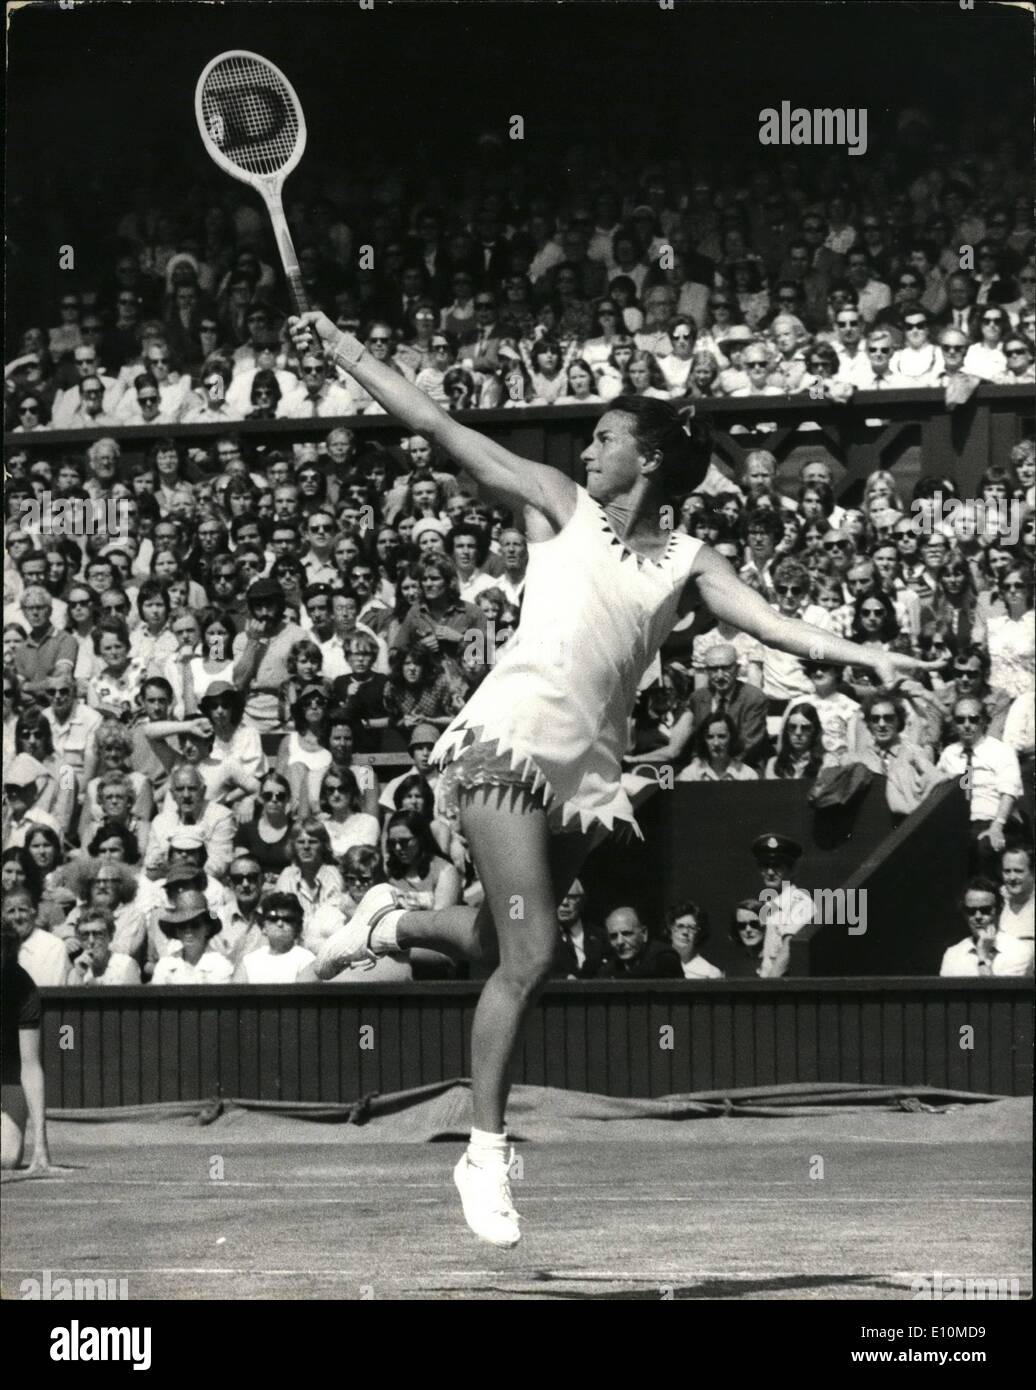 Giugno 06, 1973 - tennis a Wimbledon. Francoise Durr vs. Virginia Wade. La foto mostra il Virginia Wade G.B. si alza dal suolo per m Foto Stock